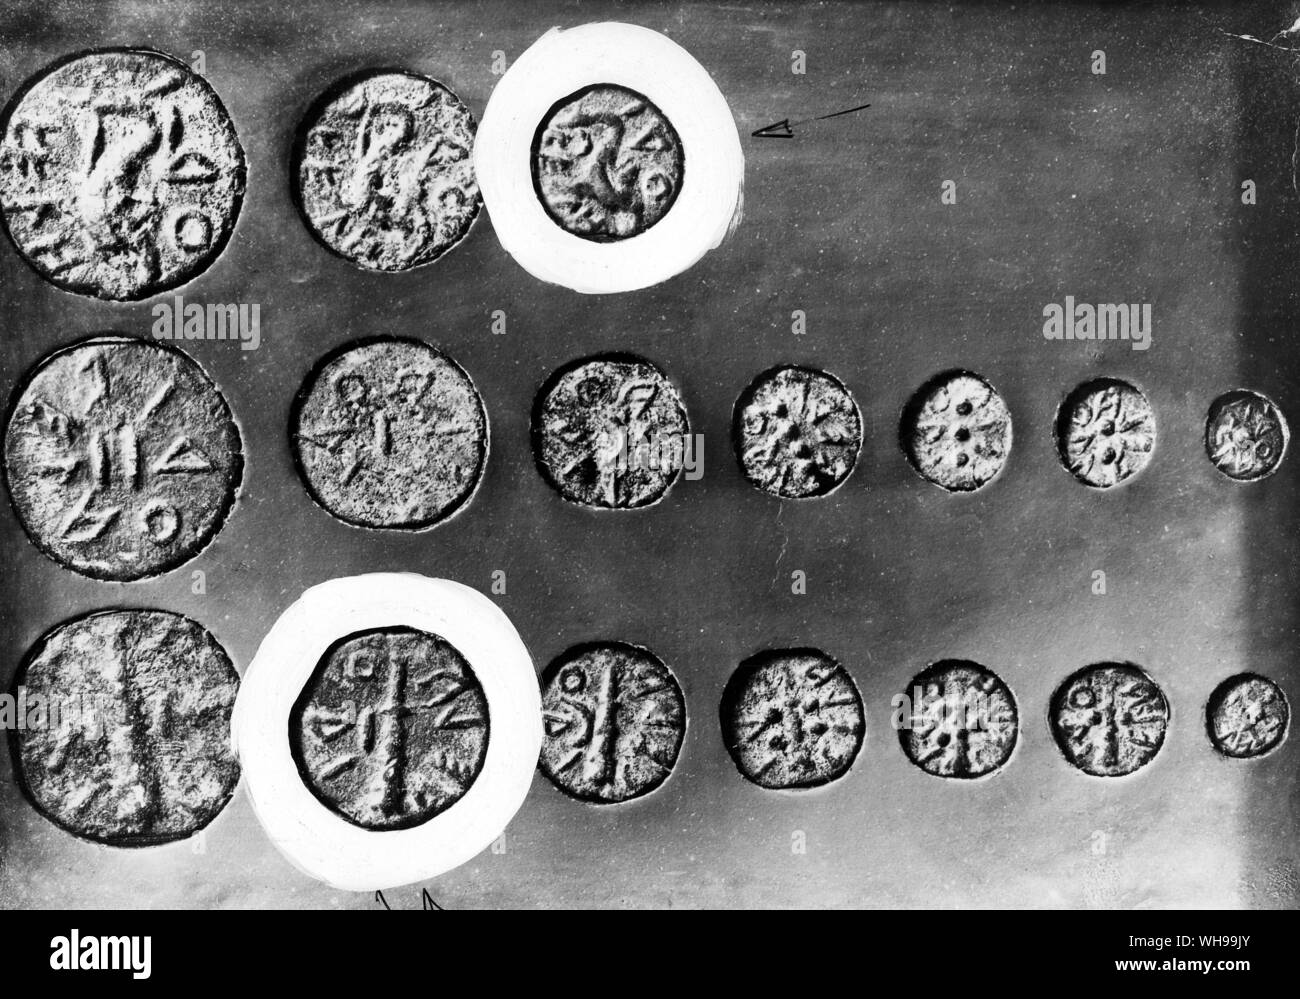 Muchas ciudades Etuscan acuñaban sus propias monedas incluyendo Volterra Foto de stock